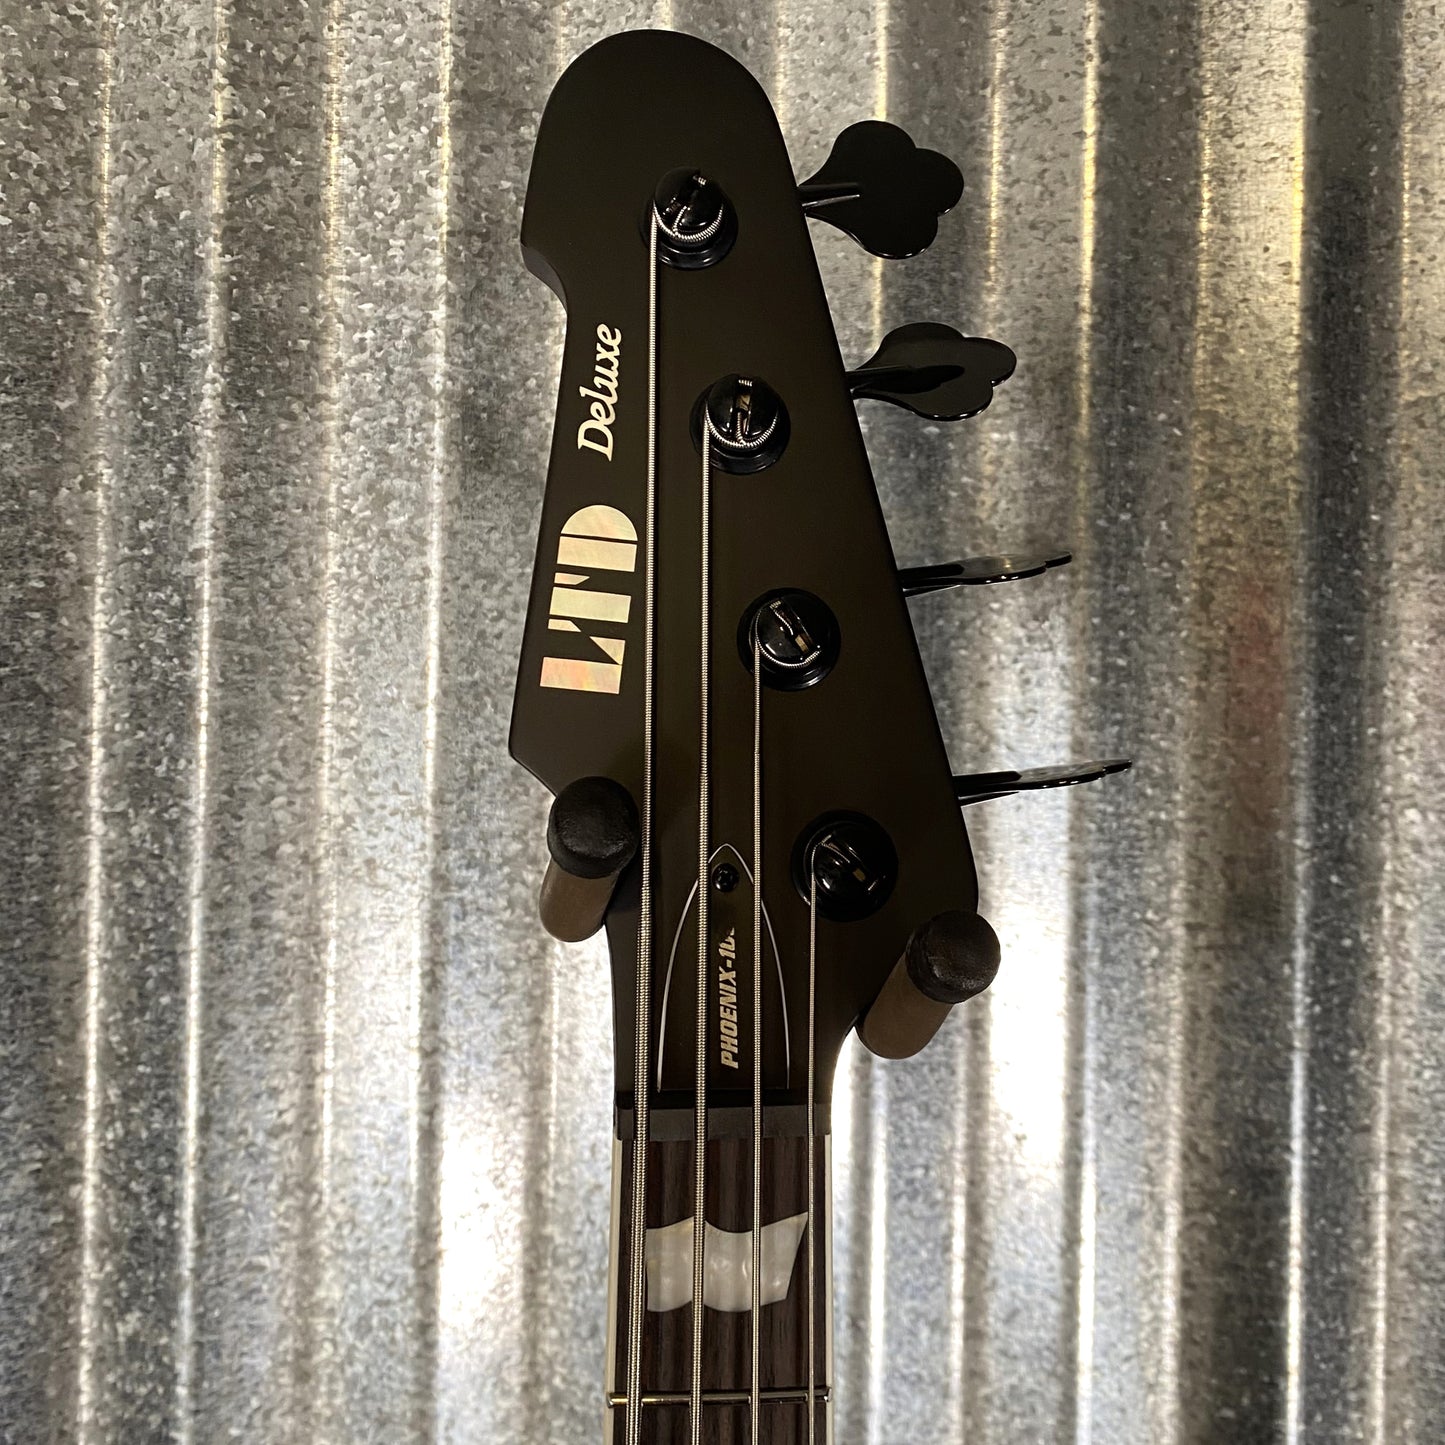 ESP LTD Phoenix 1004 4 String Bass Tobacco Sunburst Satin LPHX1004TSBS #0243 Used